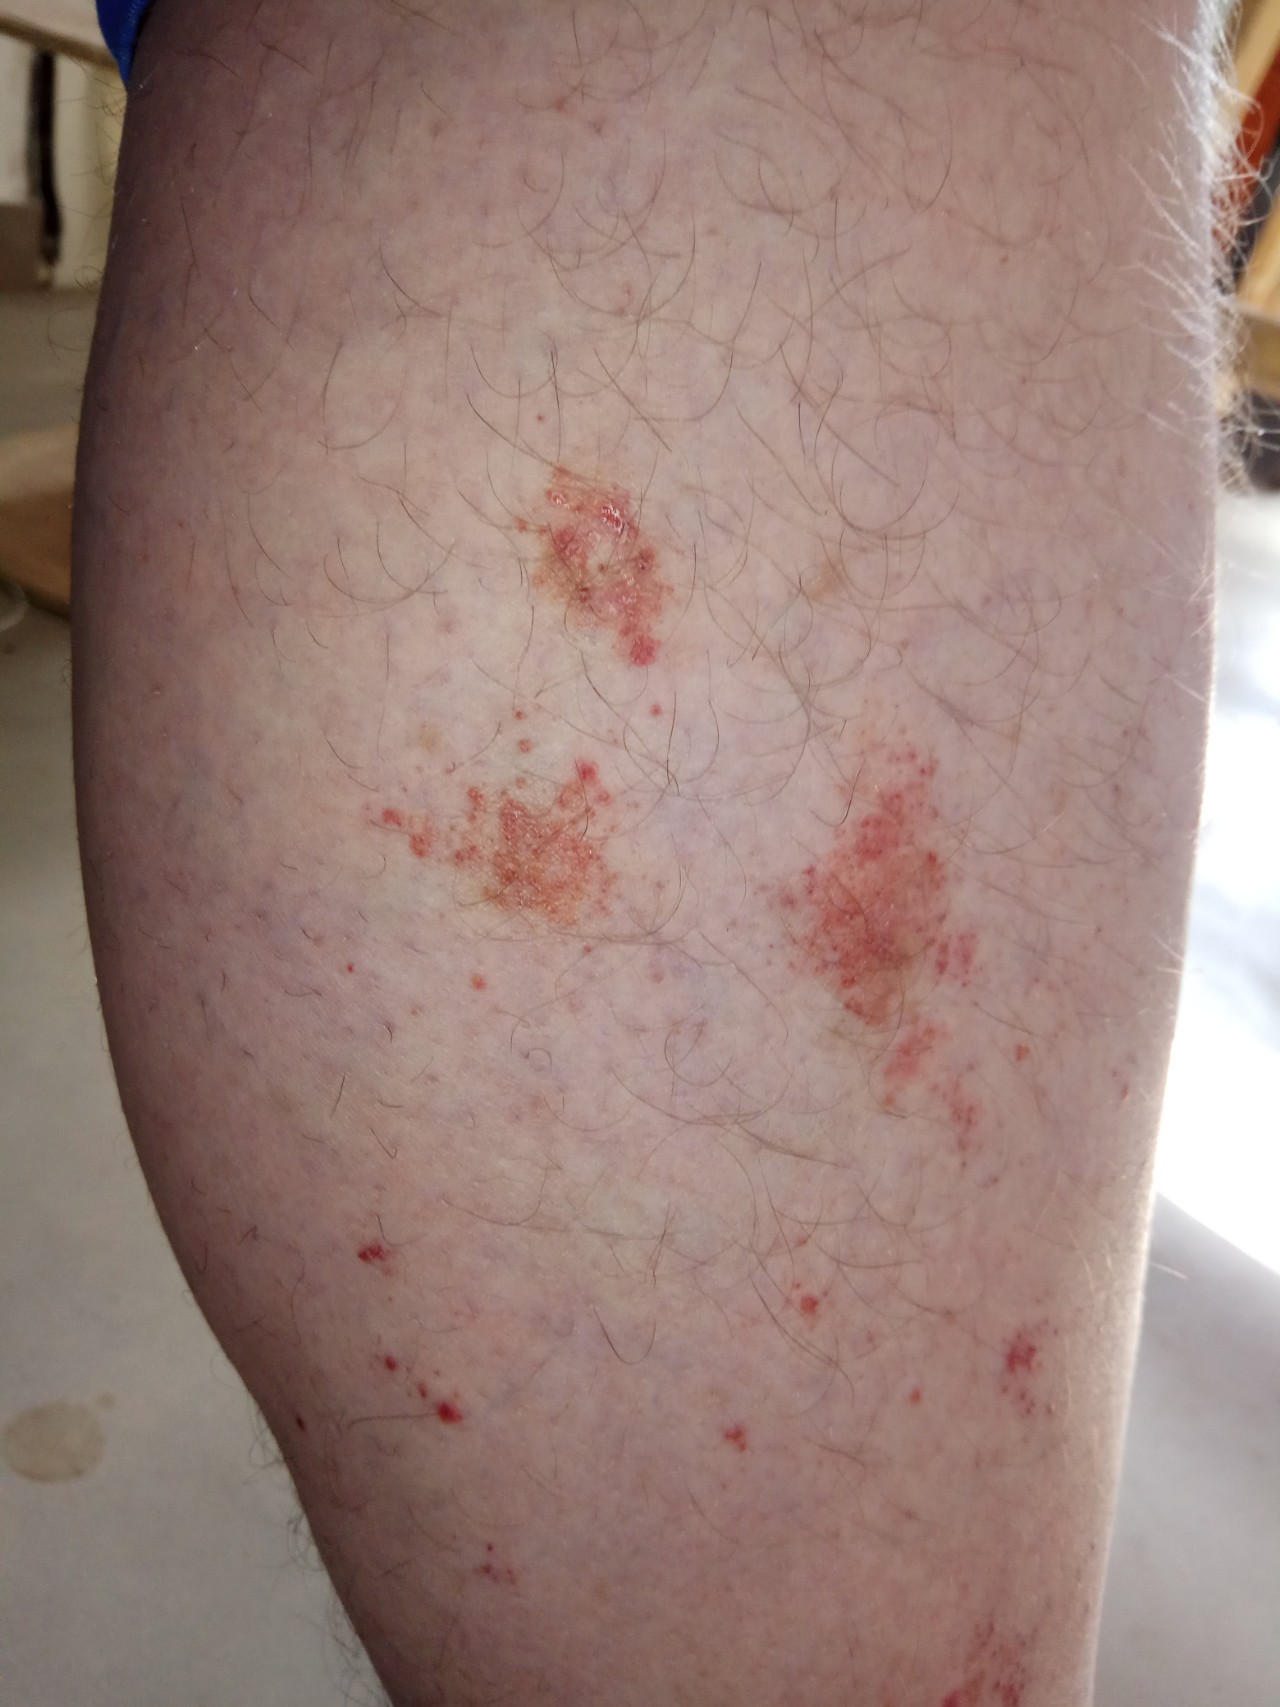 Красные пятна на ногах фото и диагноз